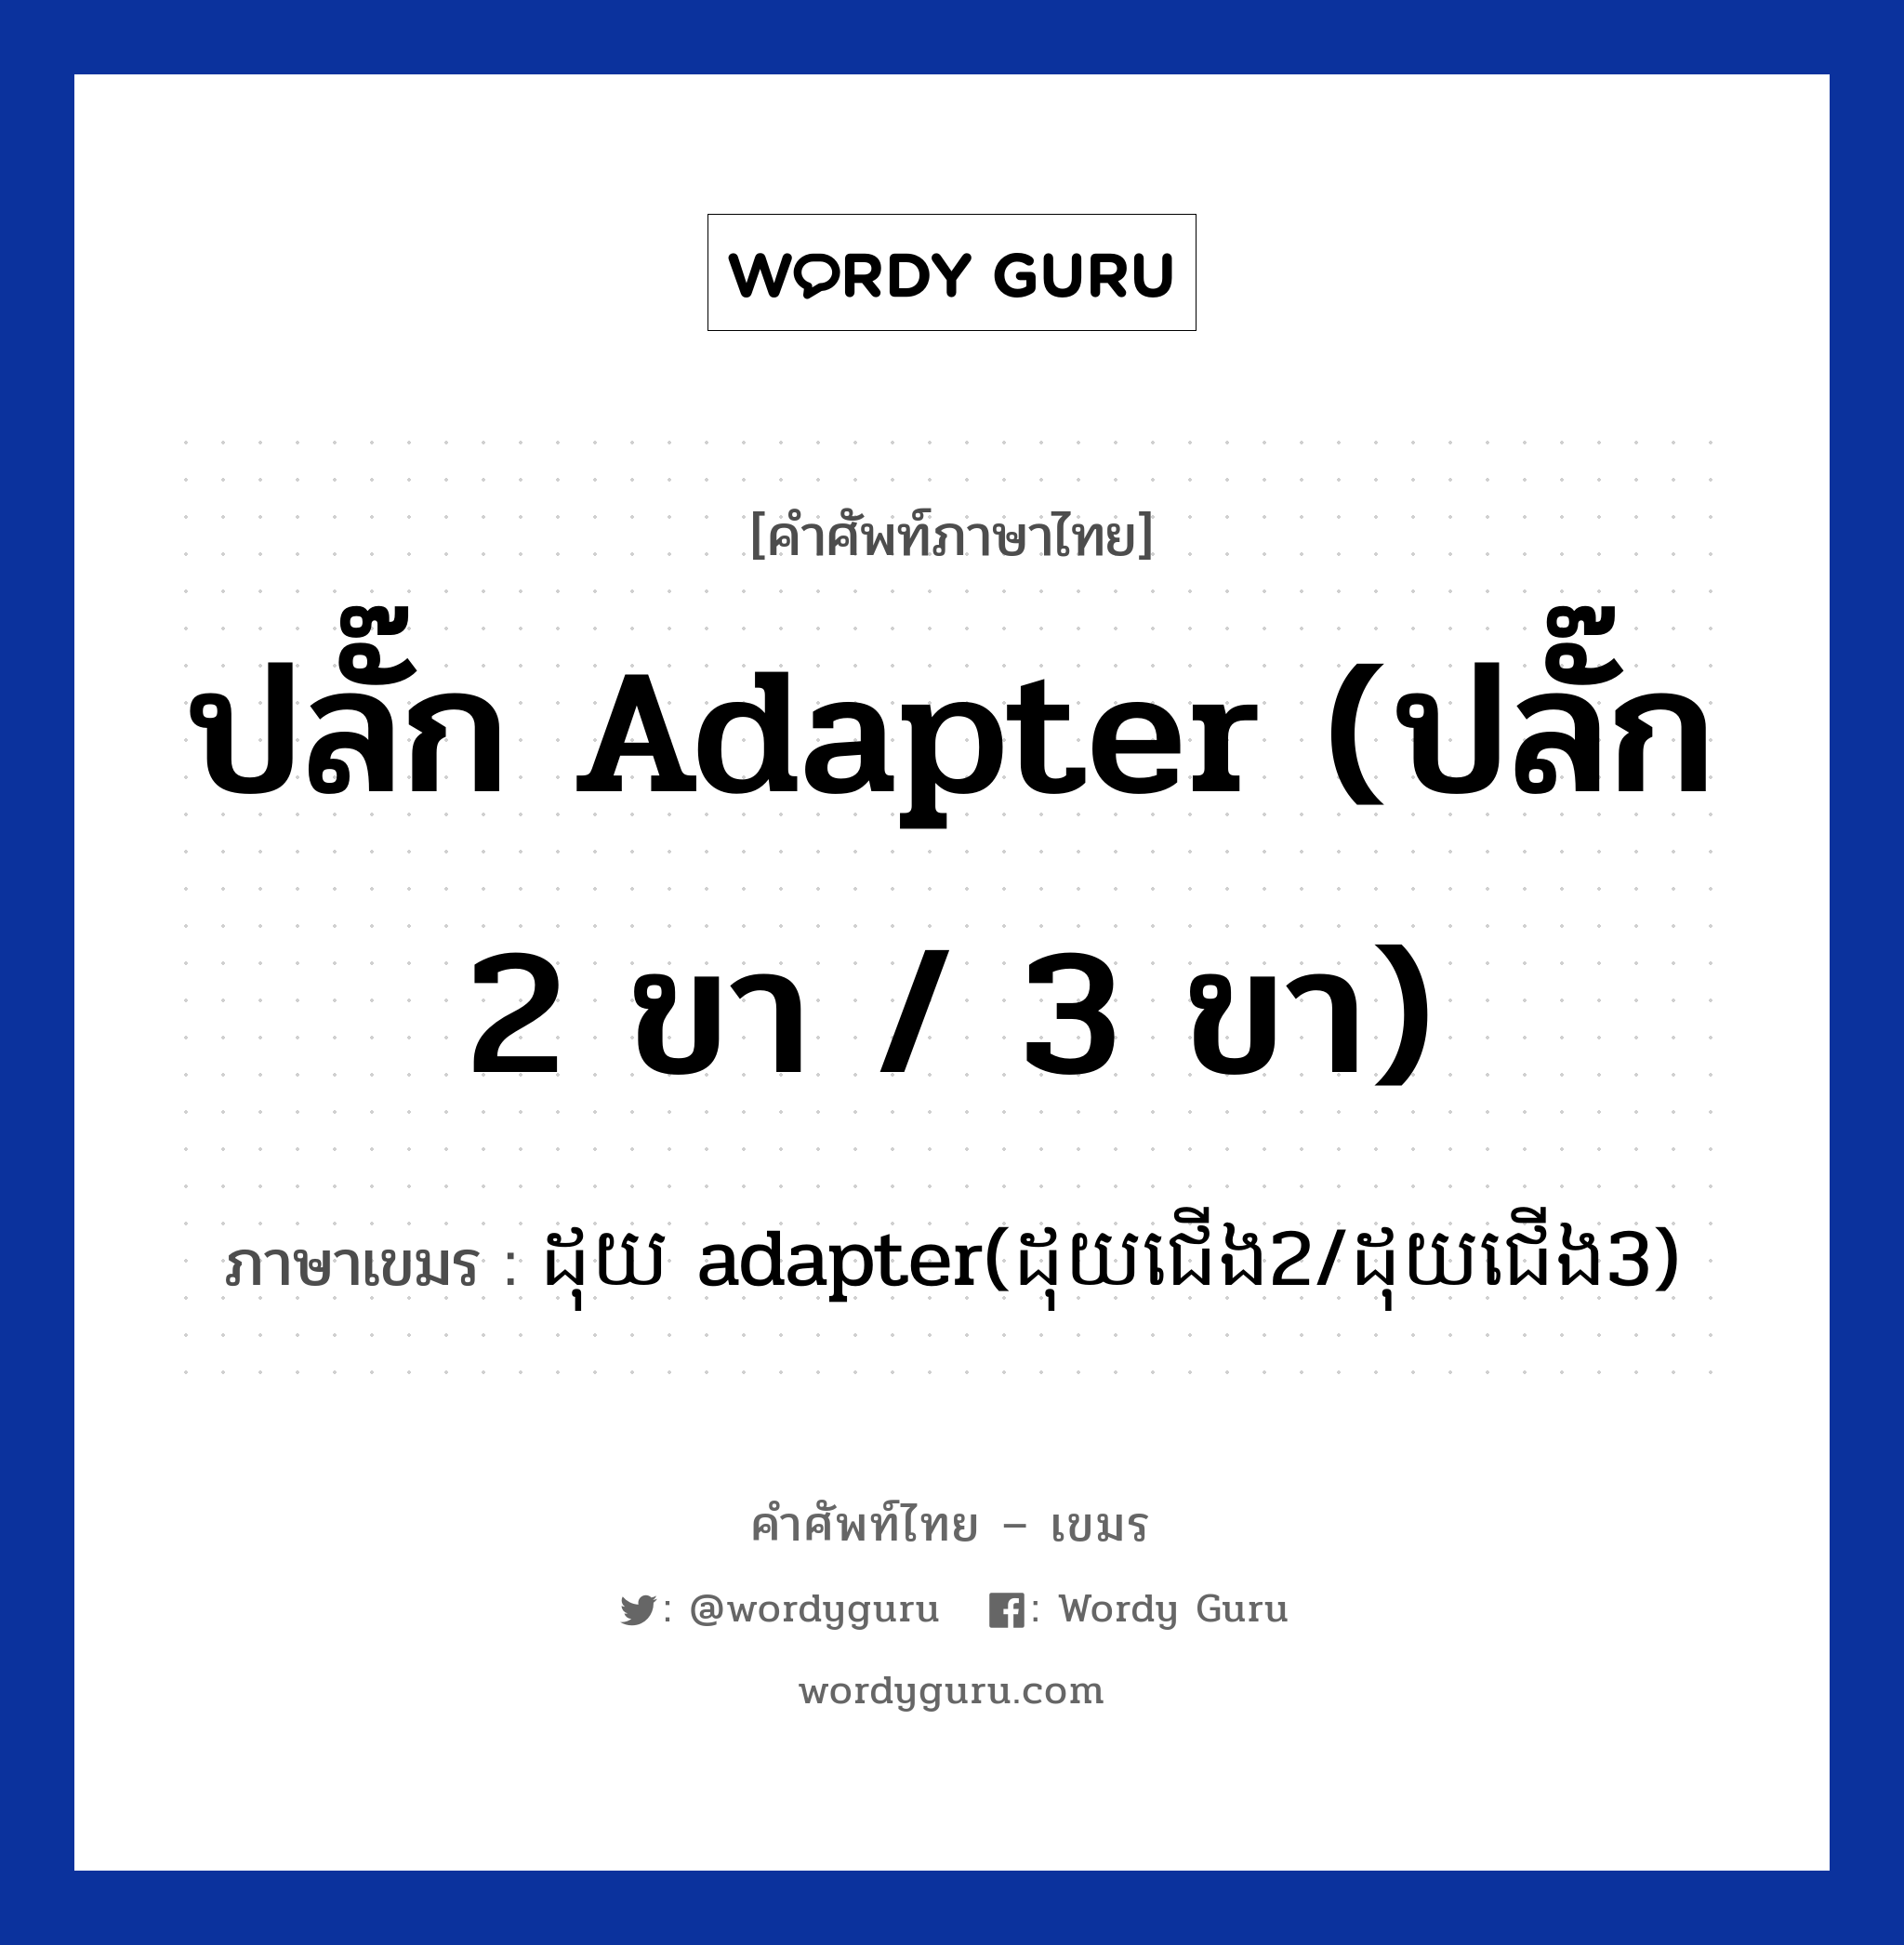 ปลั๊ก adapter (ปลั๊ก 2 ขา / 3 ขา) แปลว่า? คำศัพท์ในกลุ่มประเภท สิ่งอำนวยความสะดวก, คำศัพท์ภาษาไทย - เขมร ปลั๊ก adapter (ปลั๊ก 2 ขา / 3 ขา) ภาษาเขมร ដុយ adapter(ដុយជេីង​2/ដុយជេីង​3) หมวด สิ่งอำนวยความสะดวก Douy adapter(douy cheong 2/ douy cheong 3) หมวด สิ่งอำนวยความสะดวก